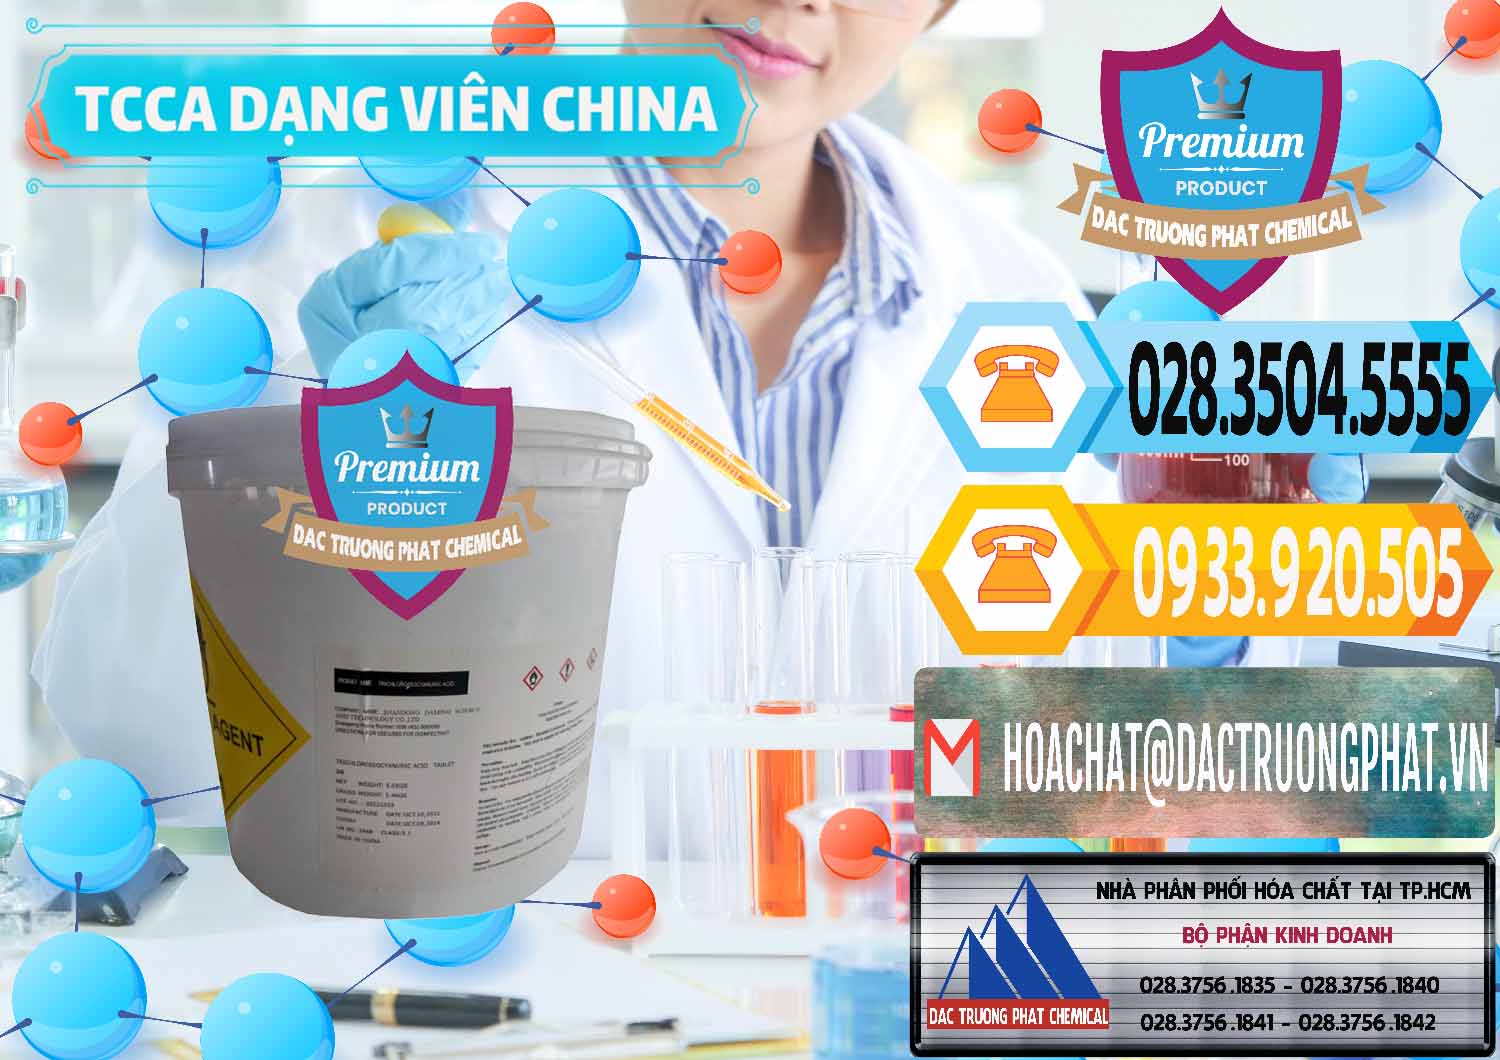 Nơi cung ứng - bán TCCA - Acid Trichloroisocyanuric Dạng Viên Thùng 5kg Trung Quốc China - 0379 - Nhập khẩu - cung cấp hóa chất tại TP.HCM - hoachattayrua.net